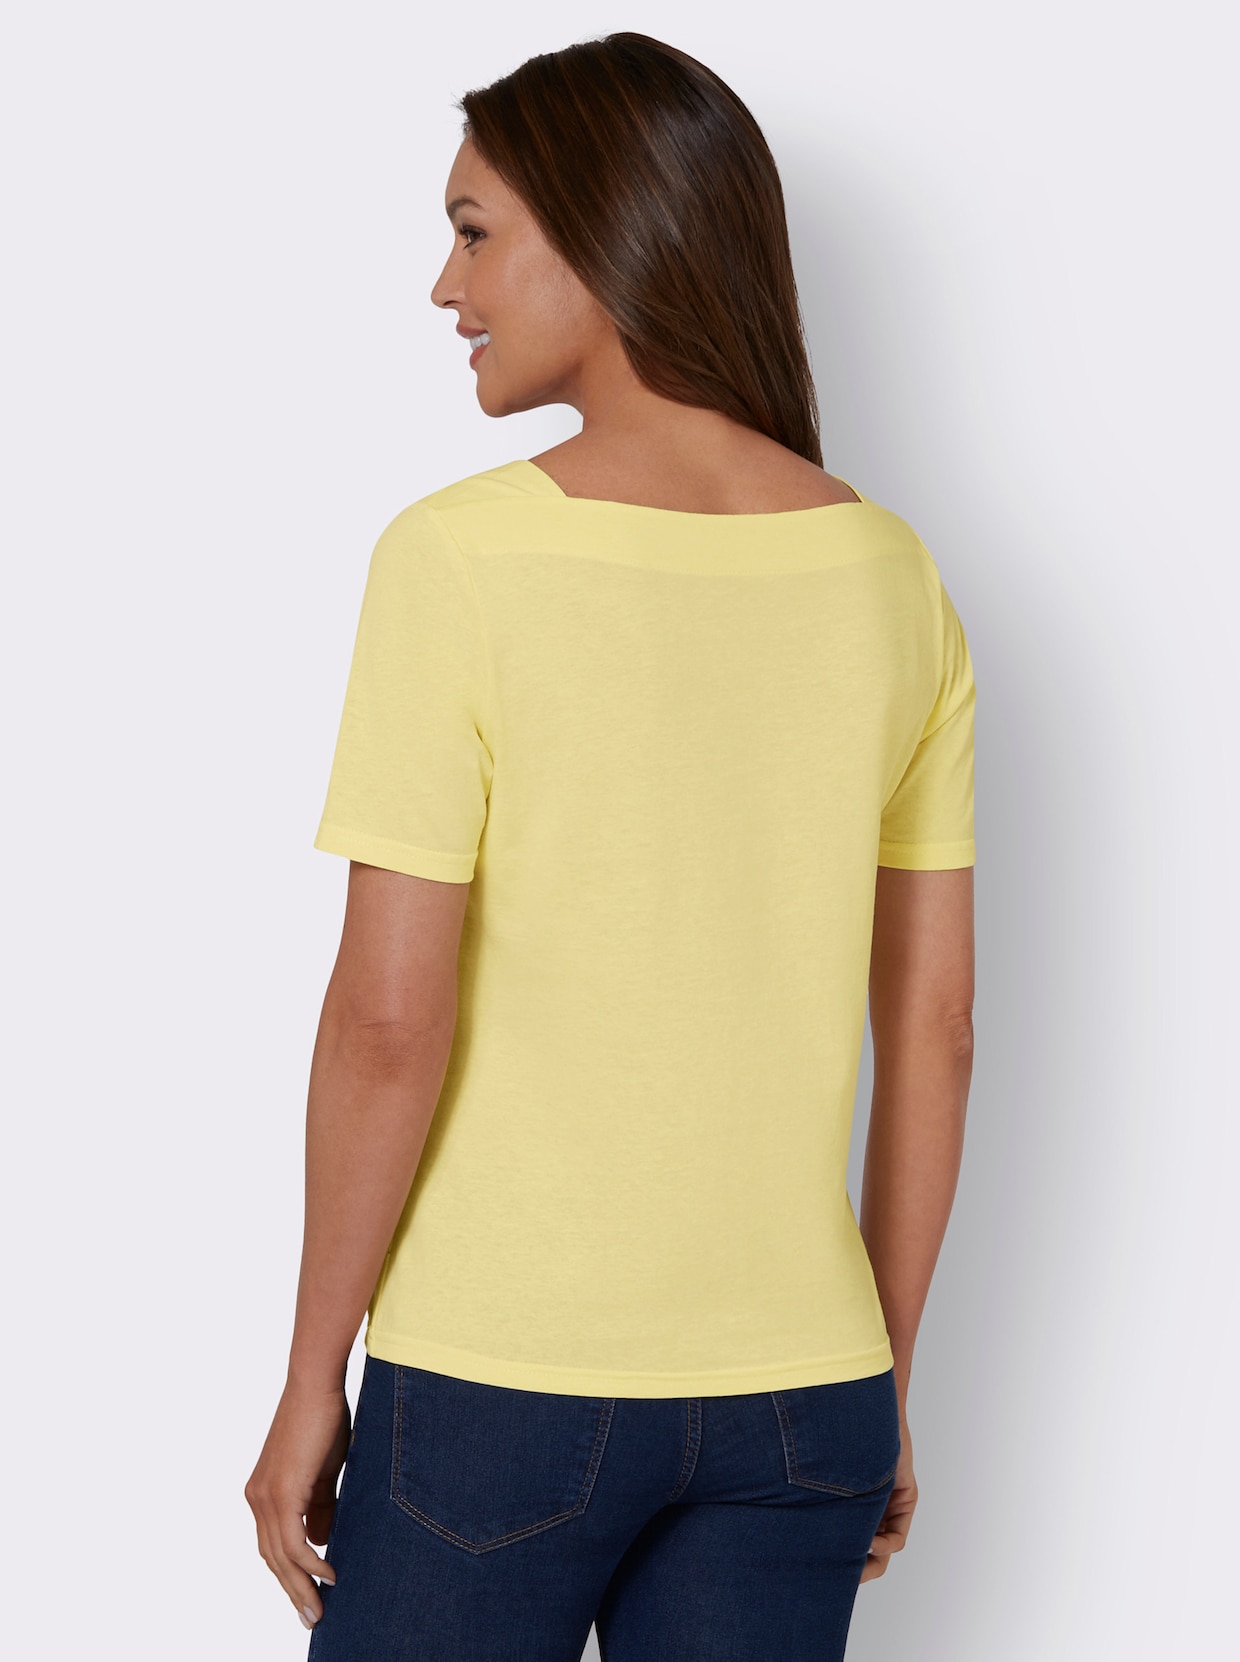 Tričko s krátkým rukávem - citronová